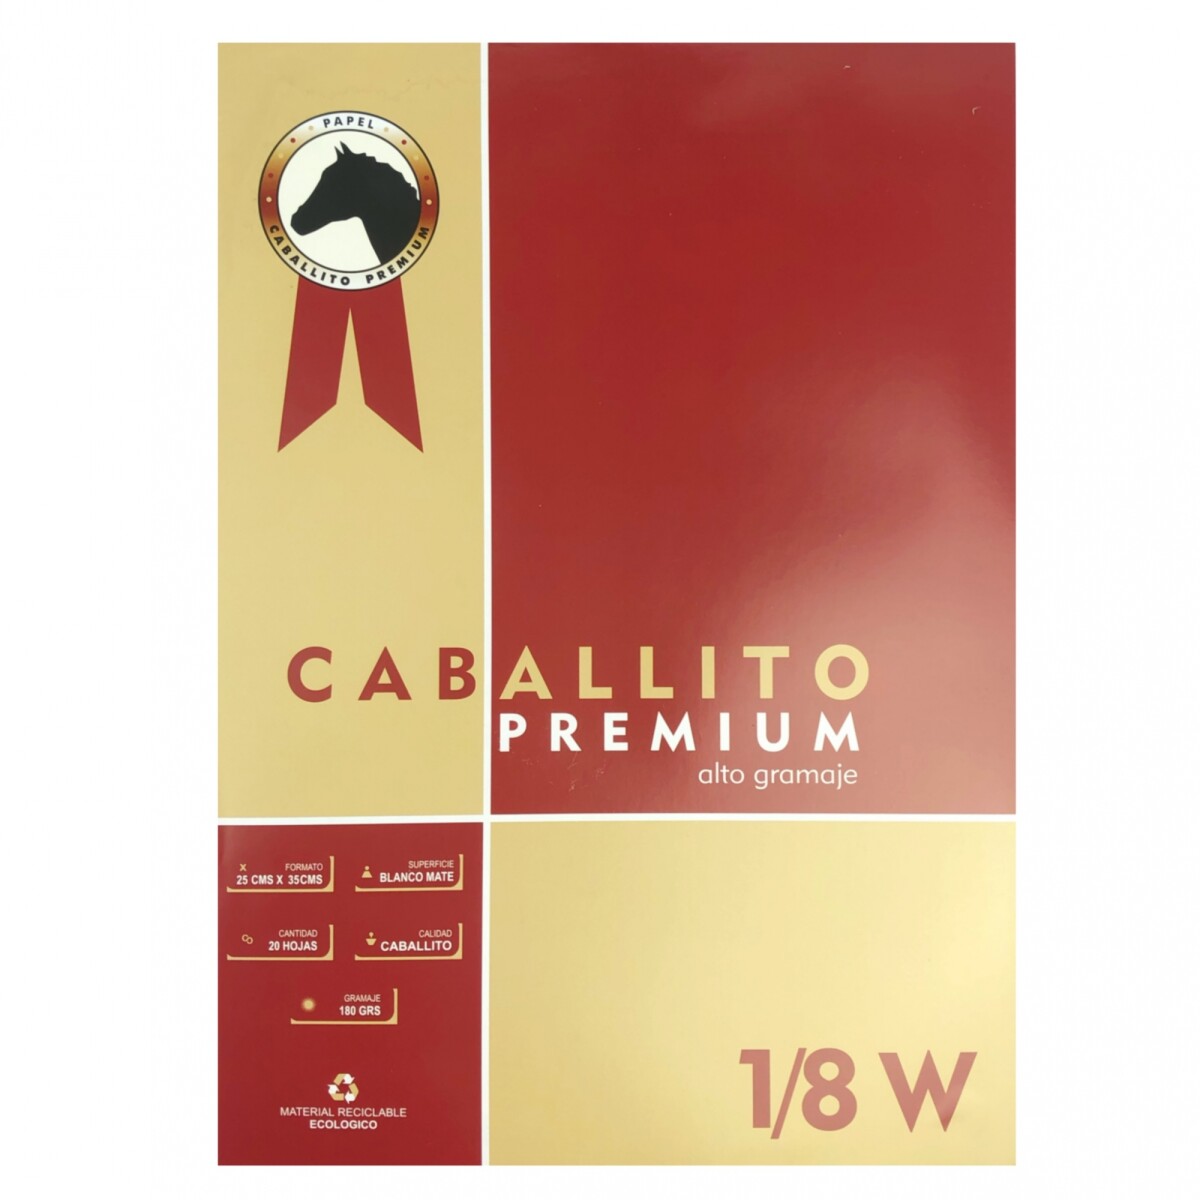 Block Caballito Premium 180 grs - 1/8 